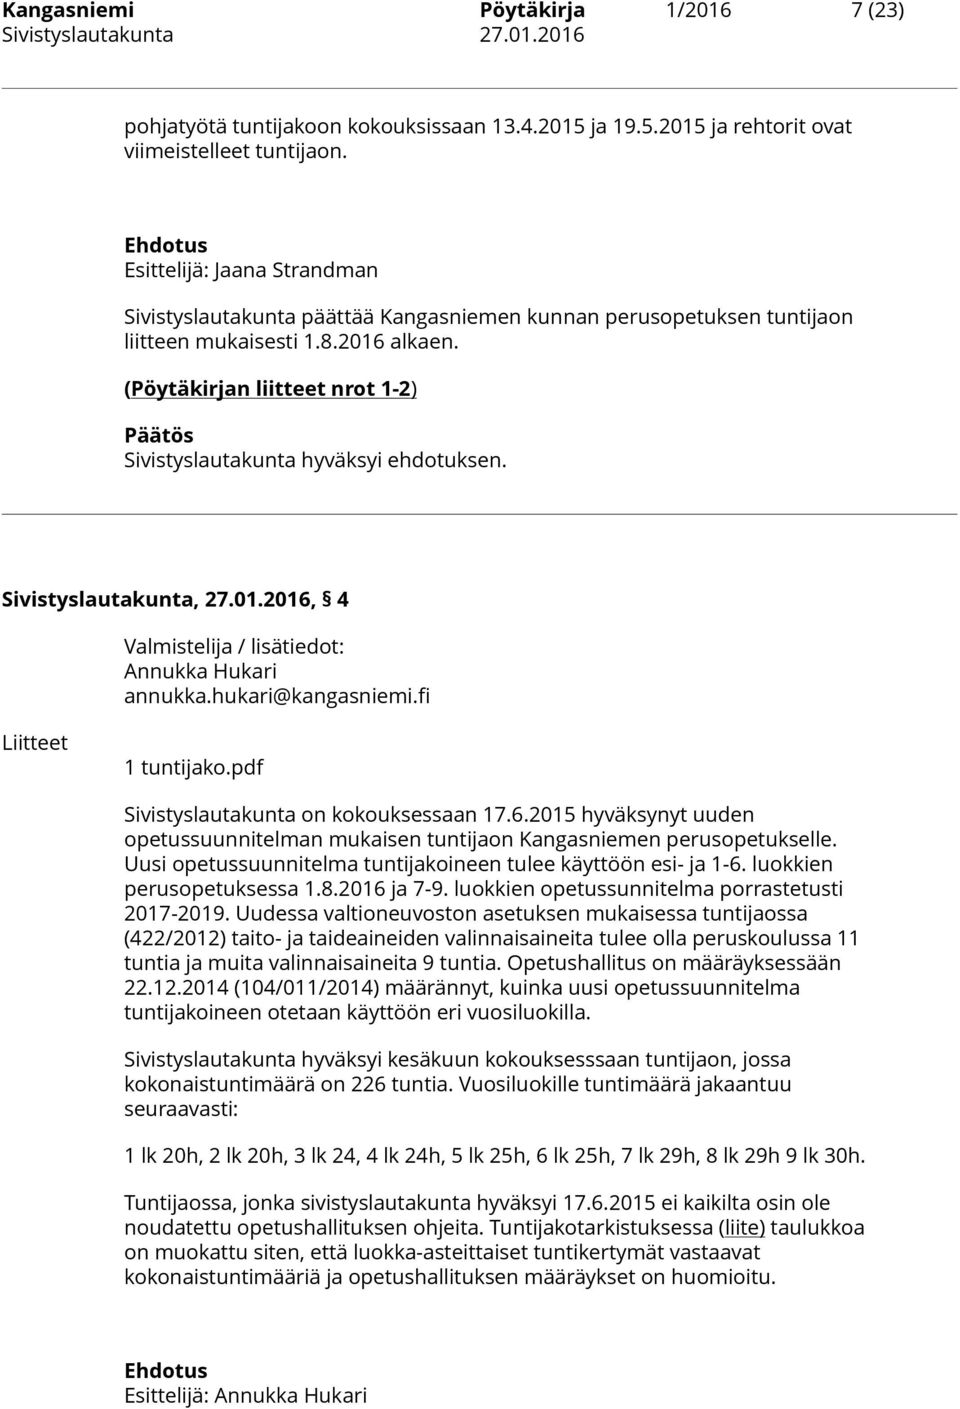 (Pöytäkirjan liitteet nrot 1-2) Sivistyslautakunta hyväksyi ehdotuksen. Sivistyslautakunta, 27.01.2016, 4 Annukka Hukari annukka.hukari@kangasniemi.fi Liitteet 1 tuntijako.